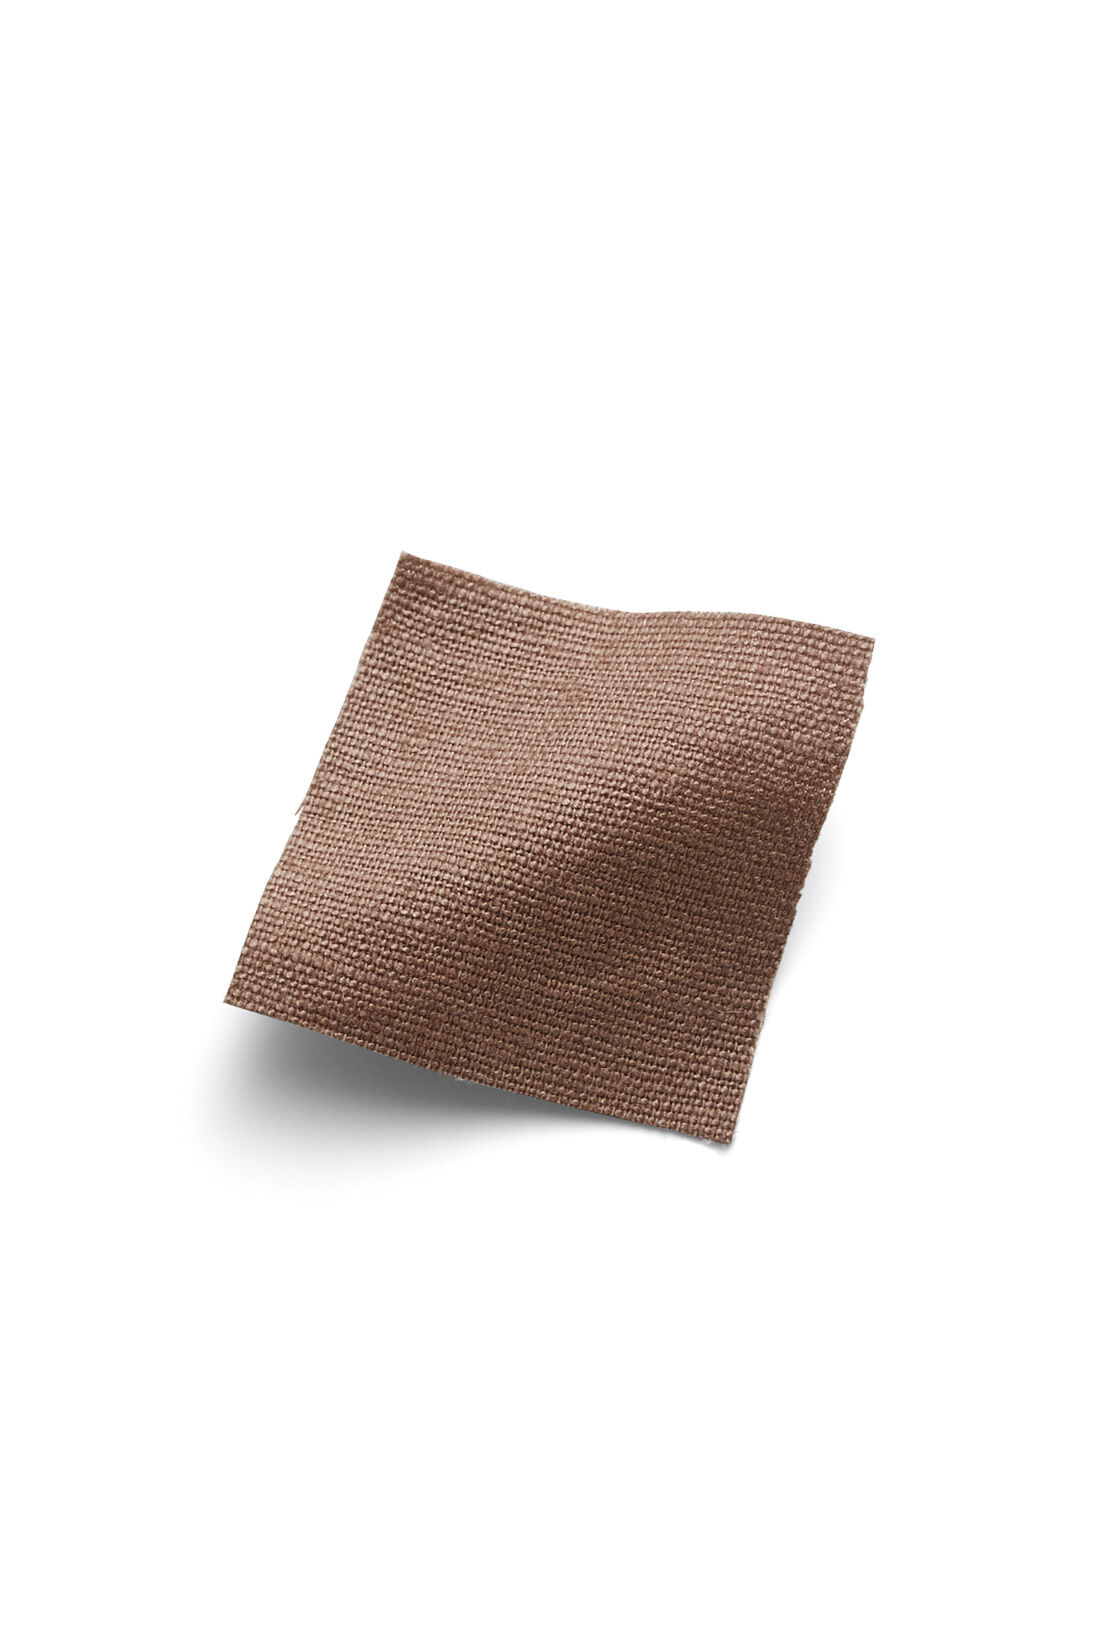 IEDIT|IEDIT[イディット]　コーディネイトをすっきり見せてくれる ストレッチ麻混素材の切り替えIラインスカート〈ベージュ〉|カラリと夏に心地いい綿麻素材。ストレッチで伸びやかなはき心地。